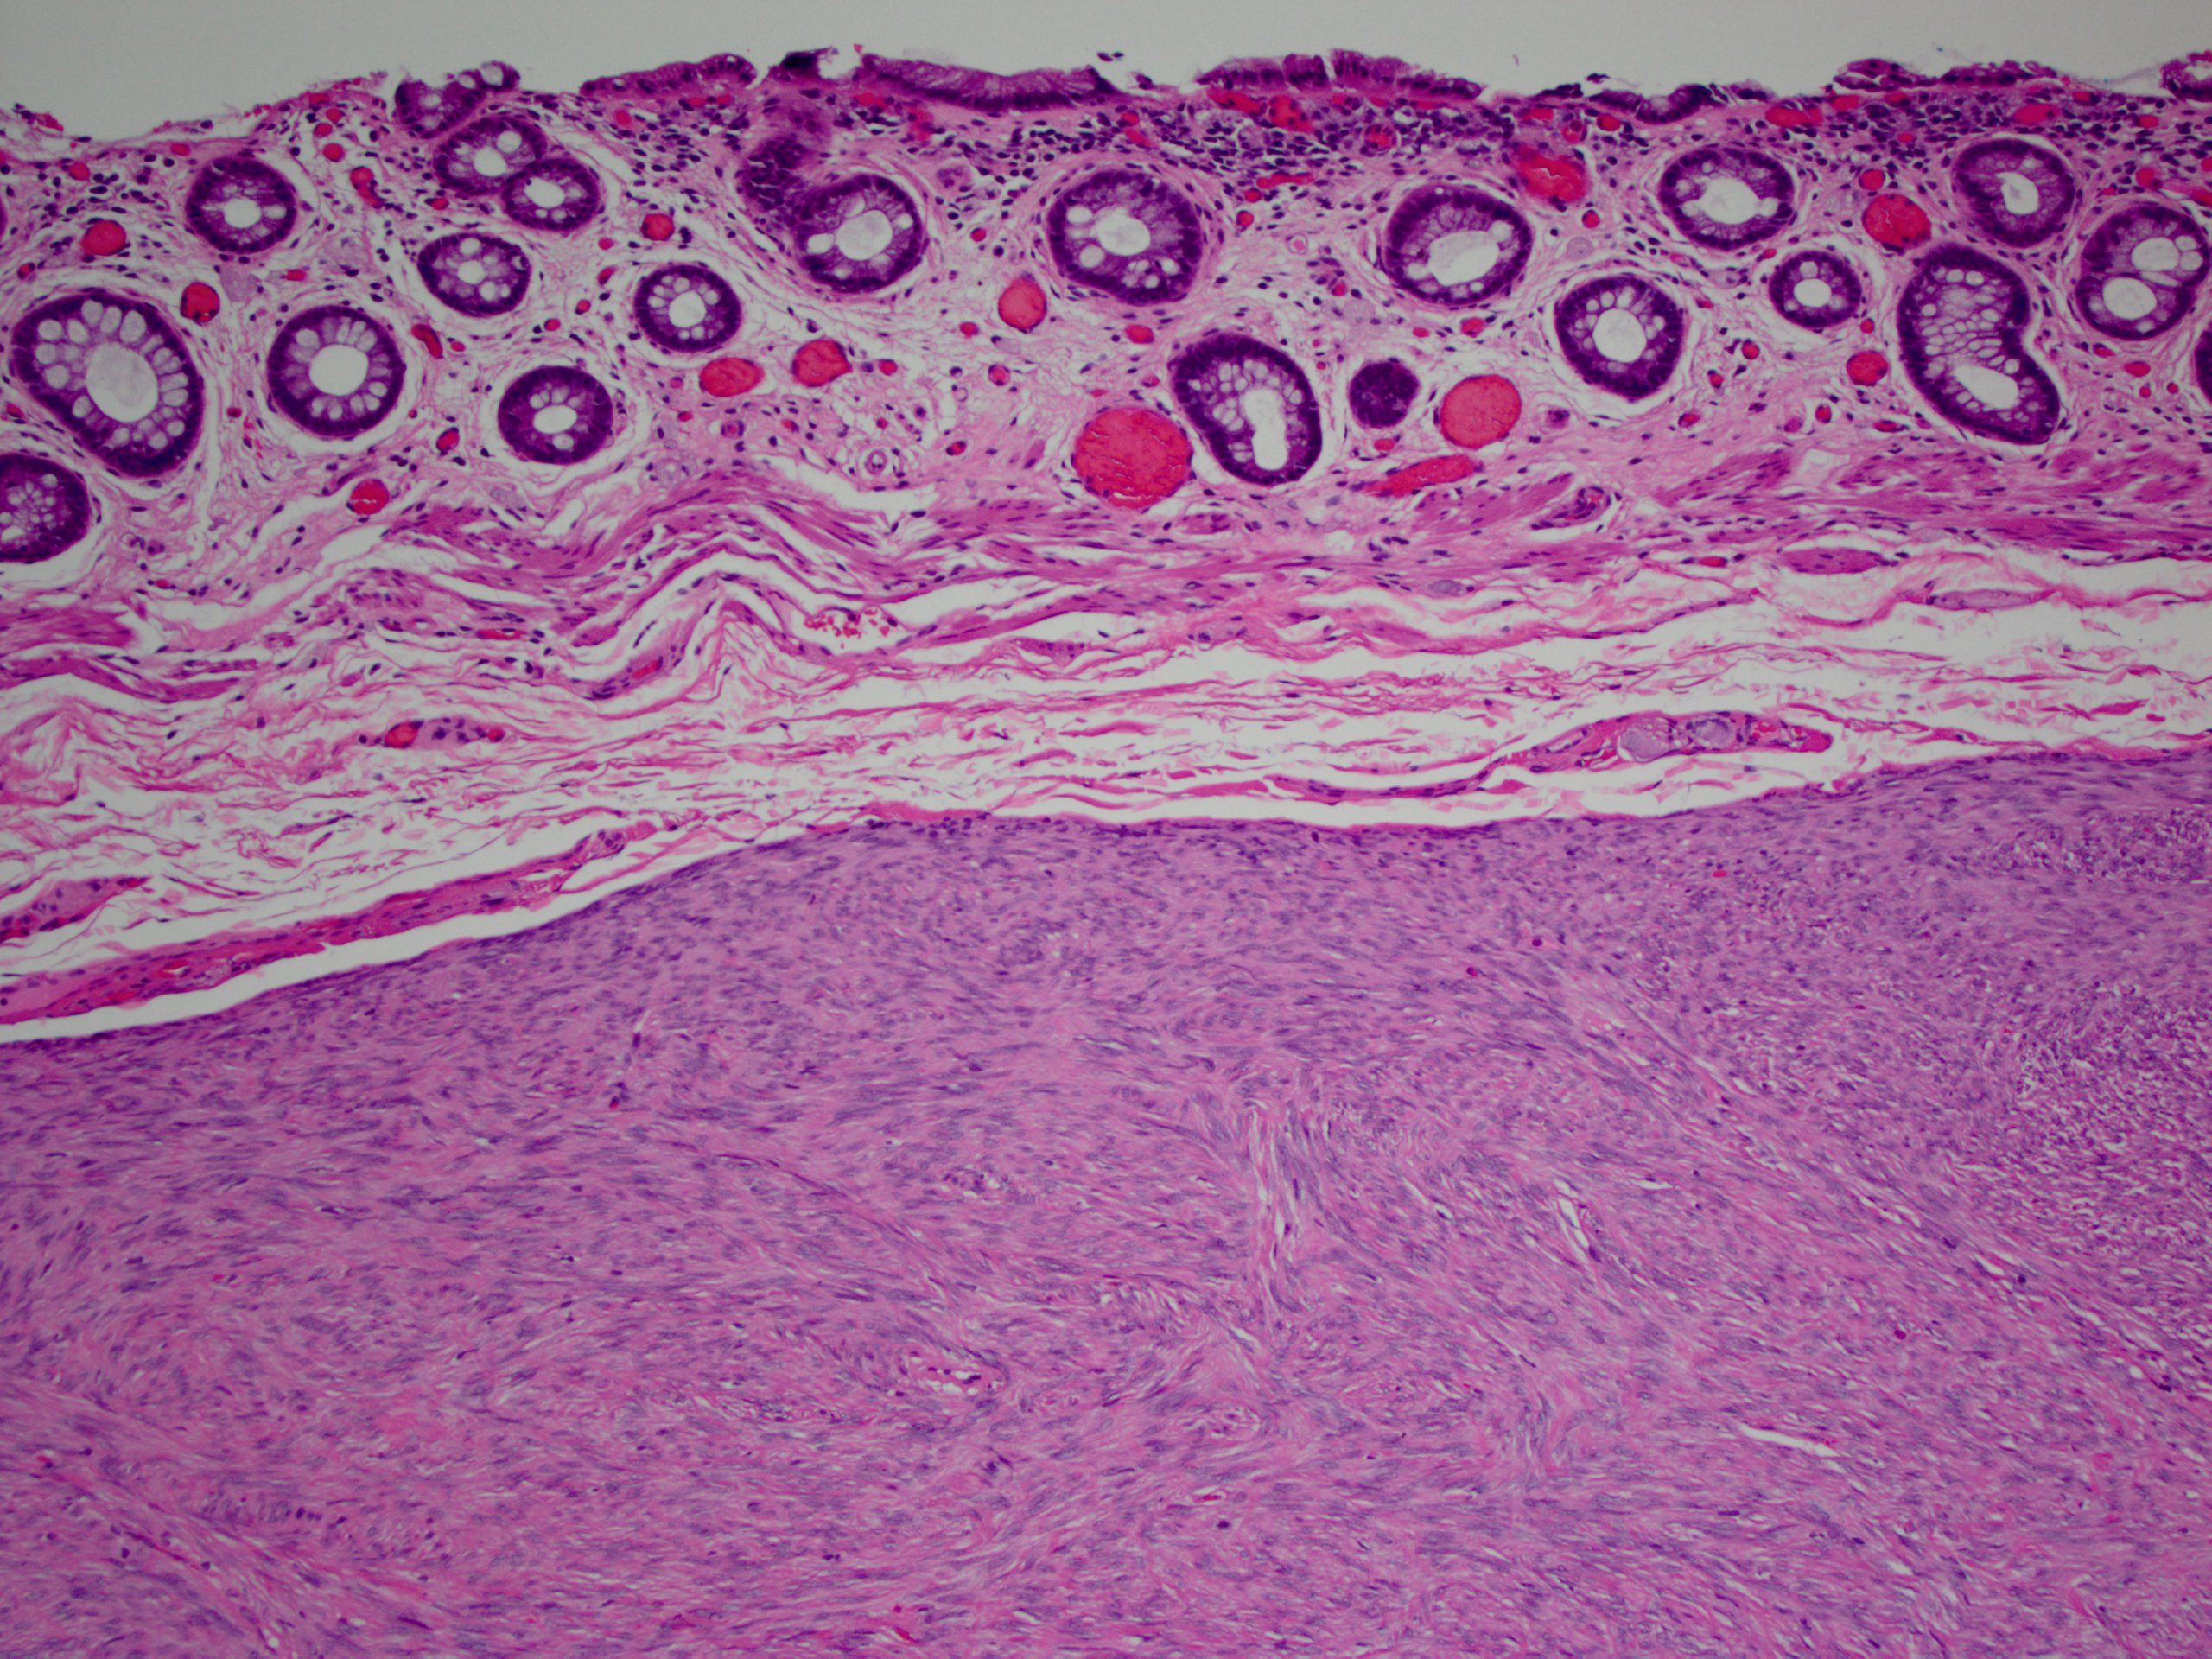 Pathology Outlines - Gastrointestinal stromal tumor.